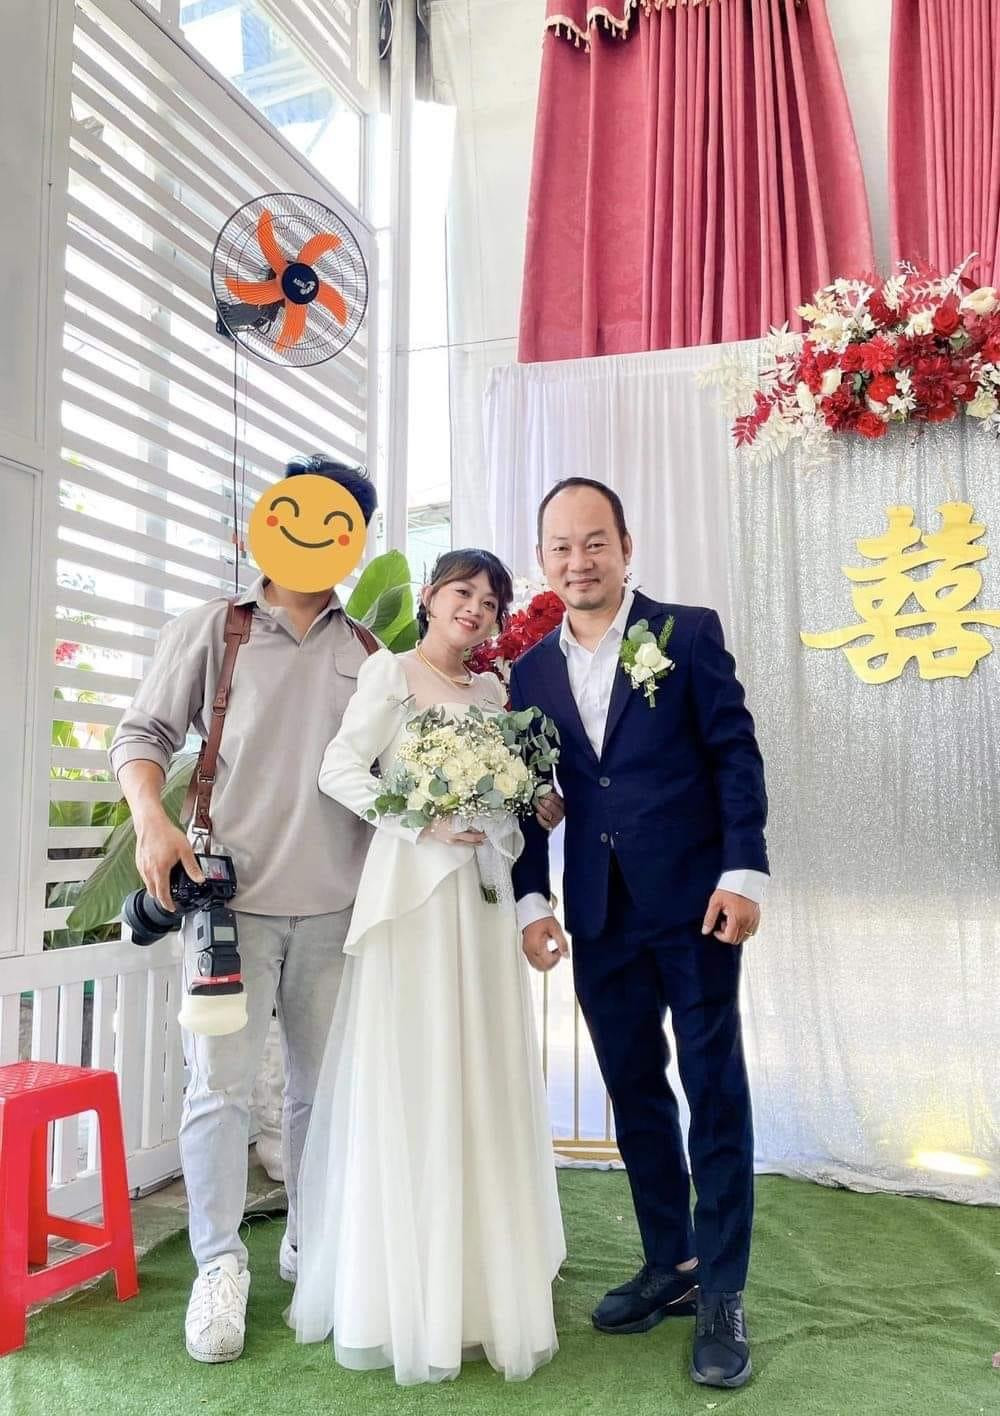 Long Đẹp Trai chụp hình cùng cô dâu trong đám cưới